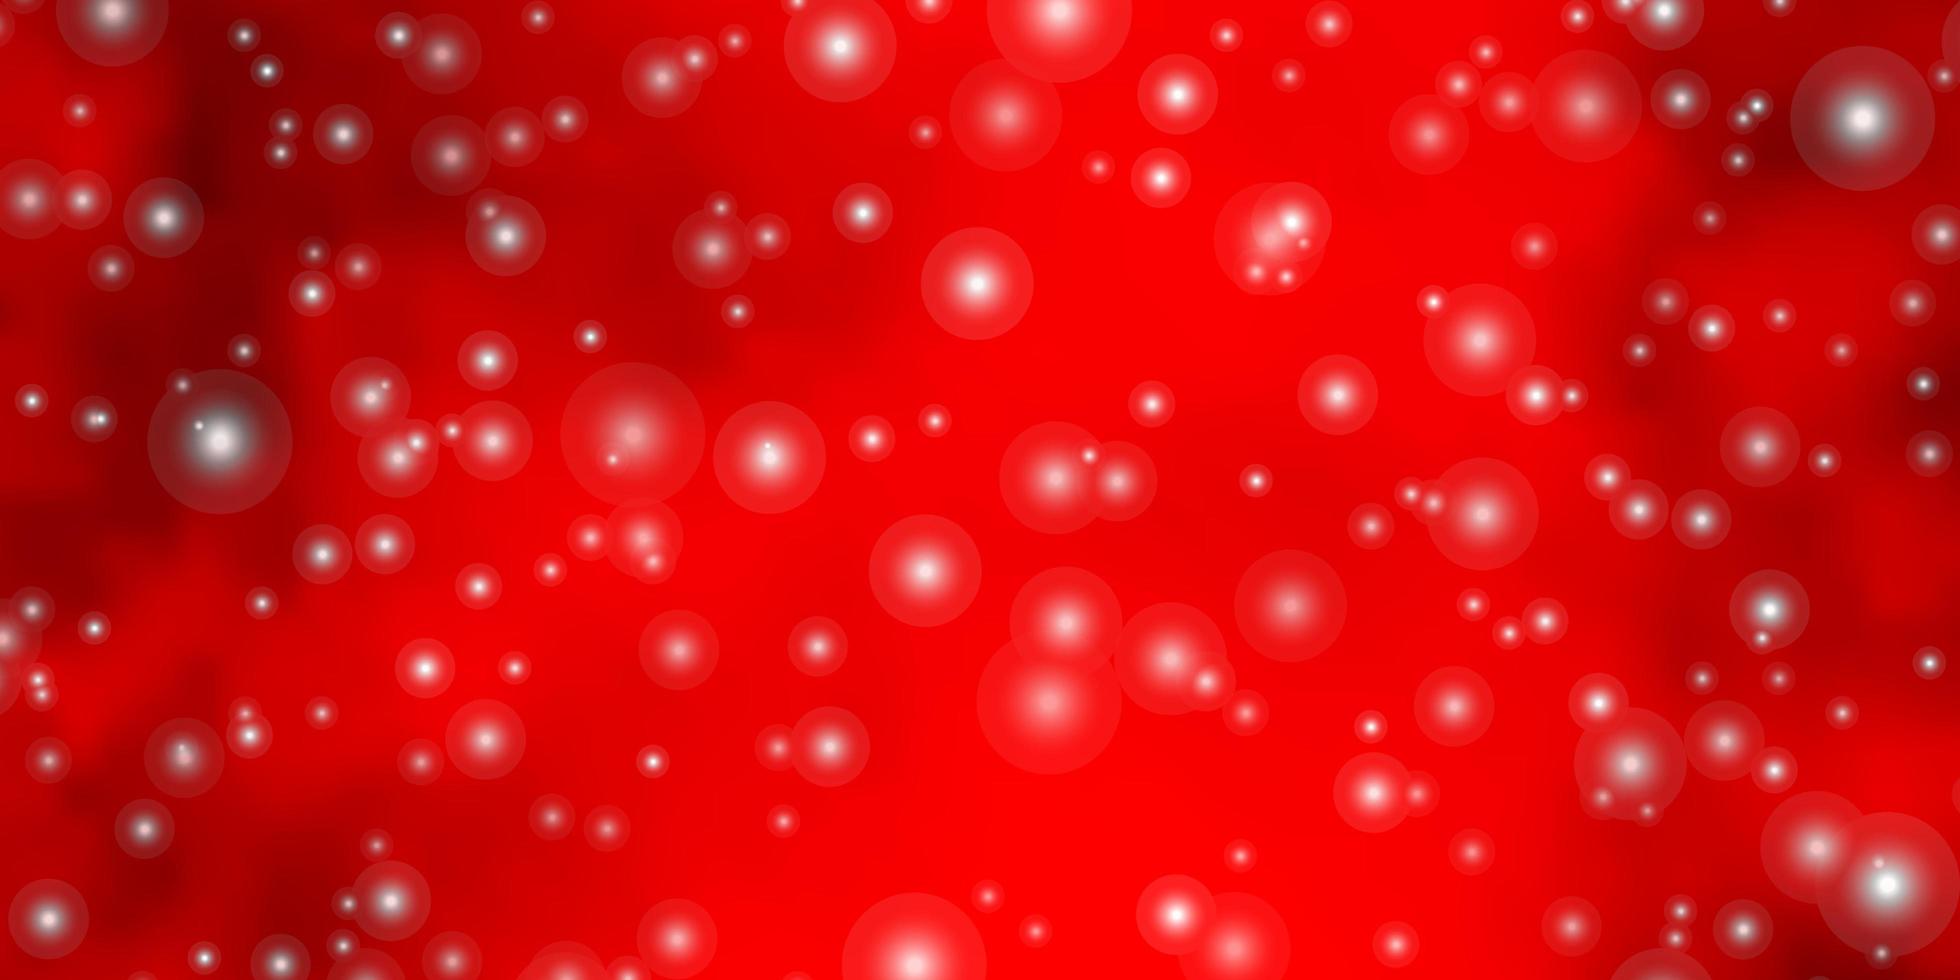 plantilla de vector rojo claro con estrellas de neón.